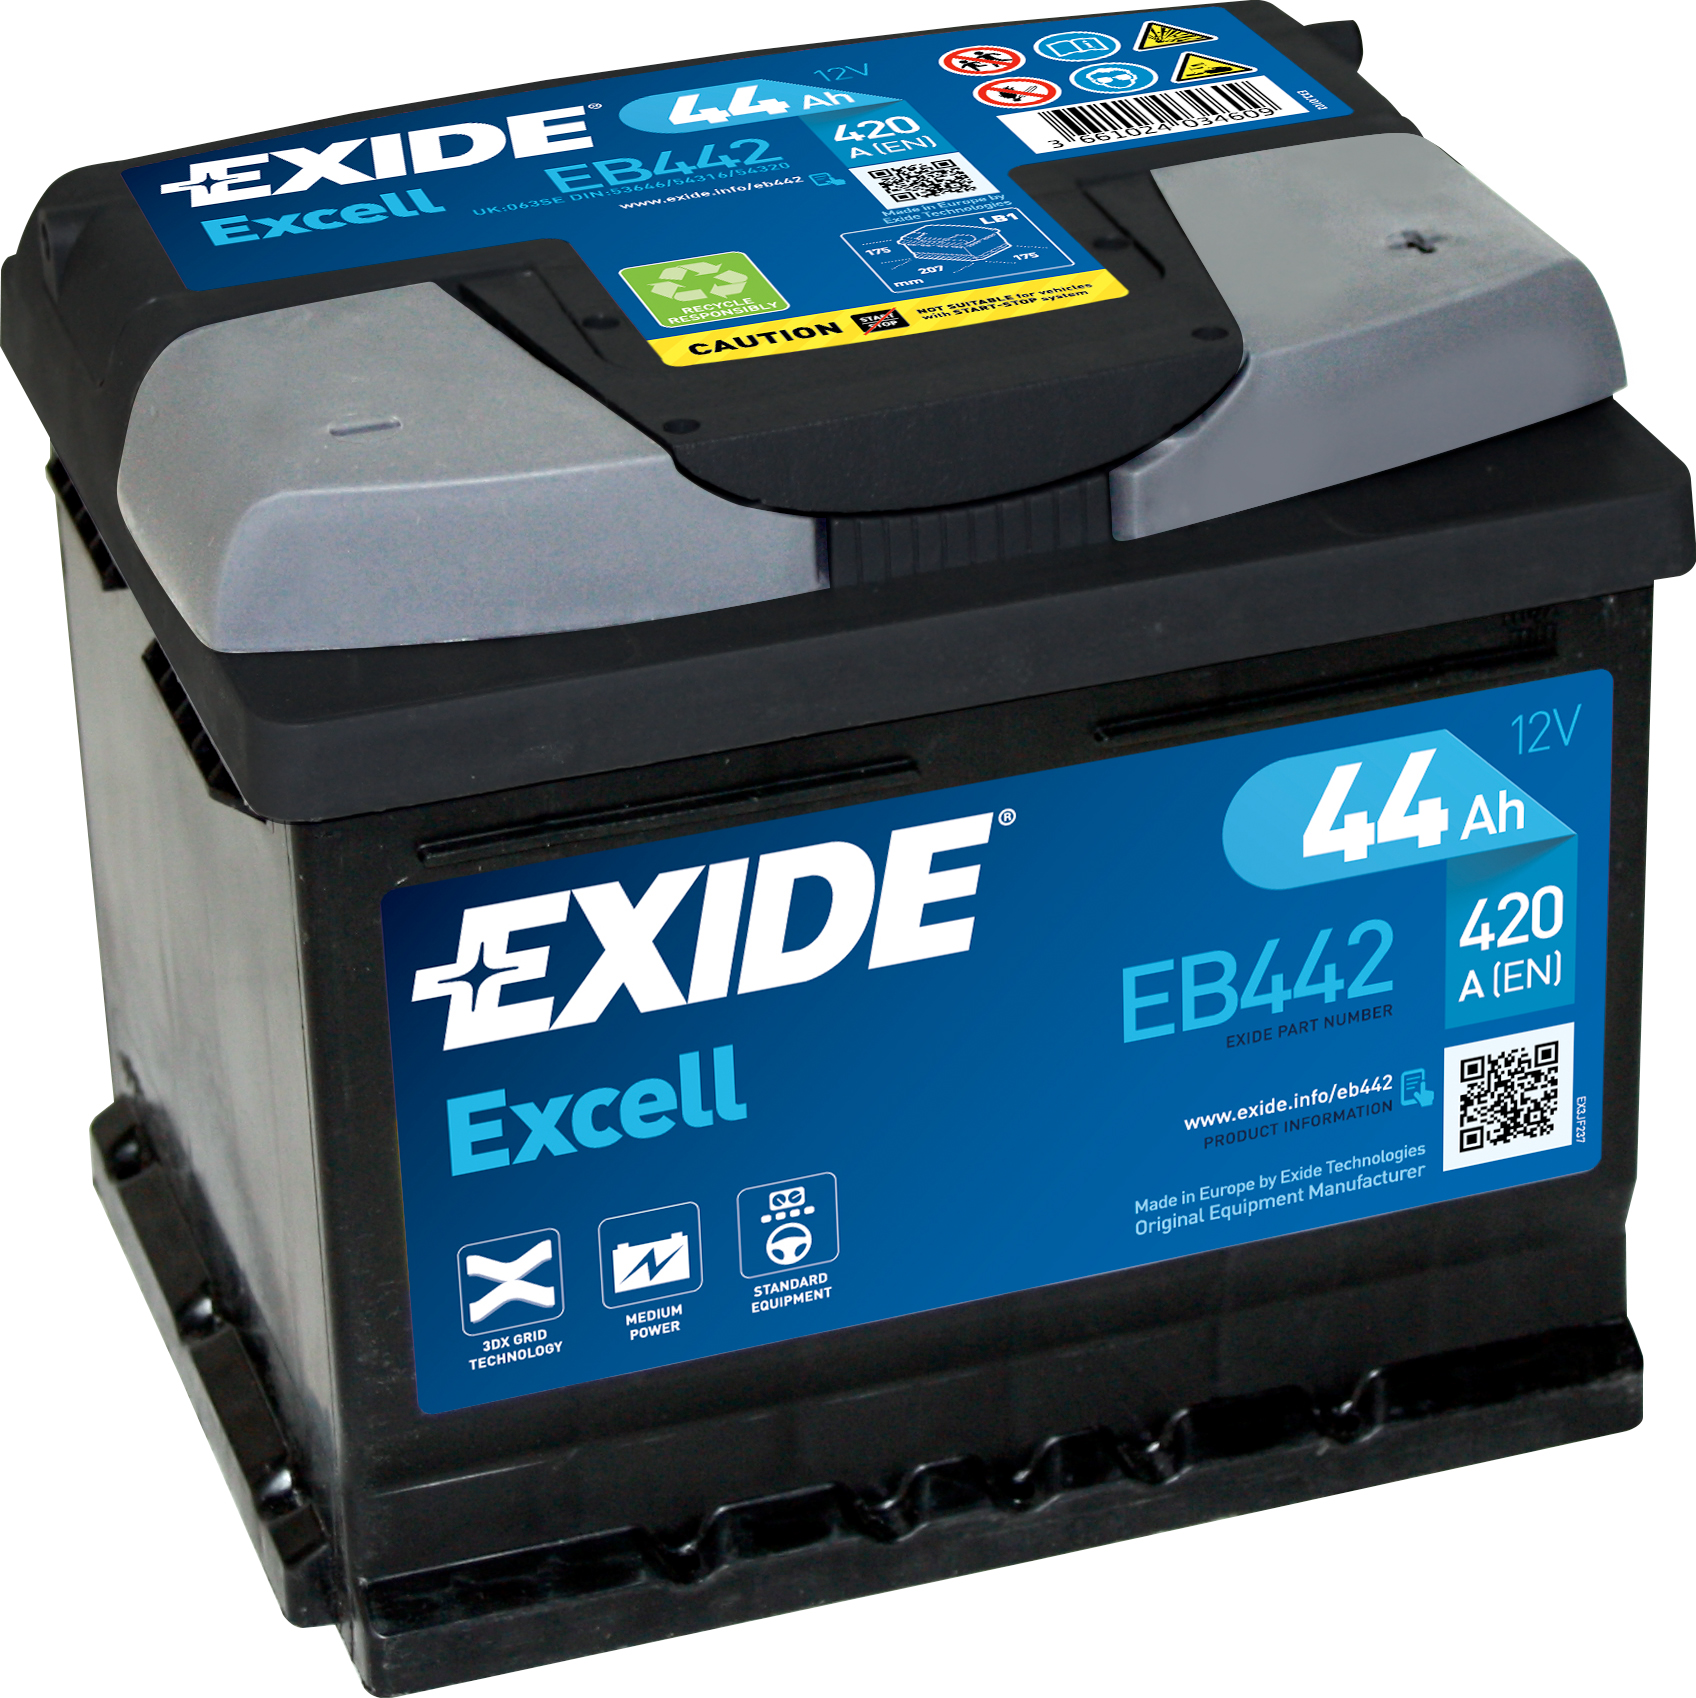 Аккумулятор EXIDE автомобильный EXCELL 44Ah 420A (EN) Кислотный EXIDE EB442